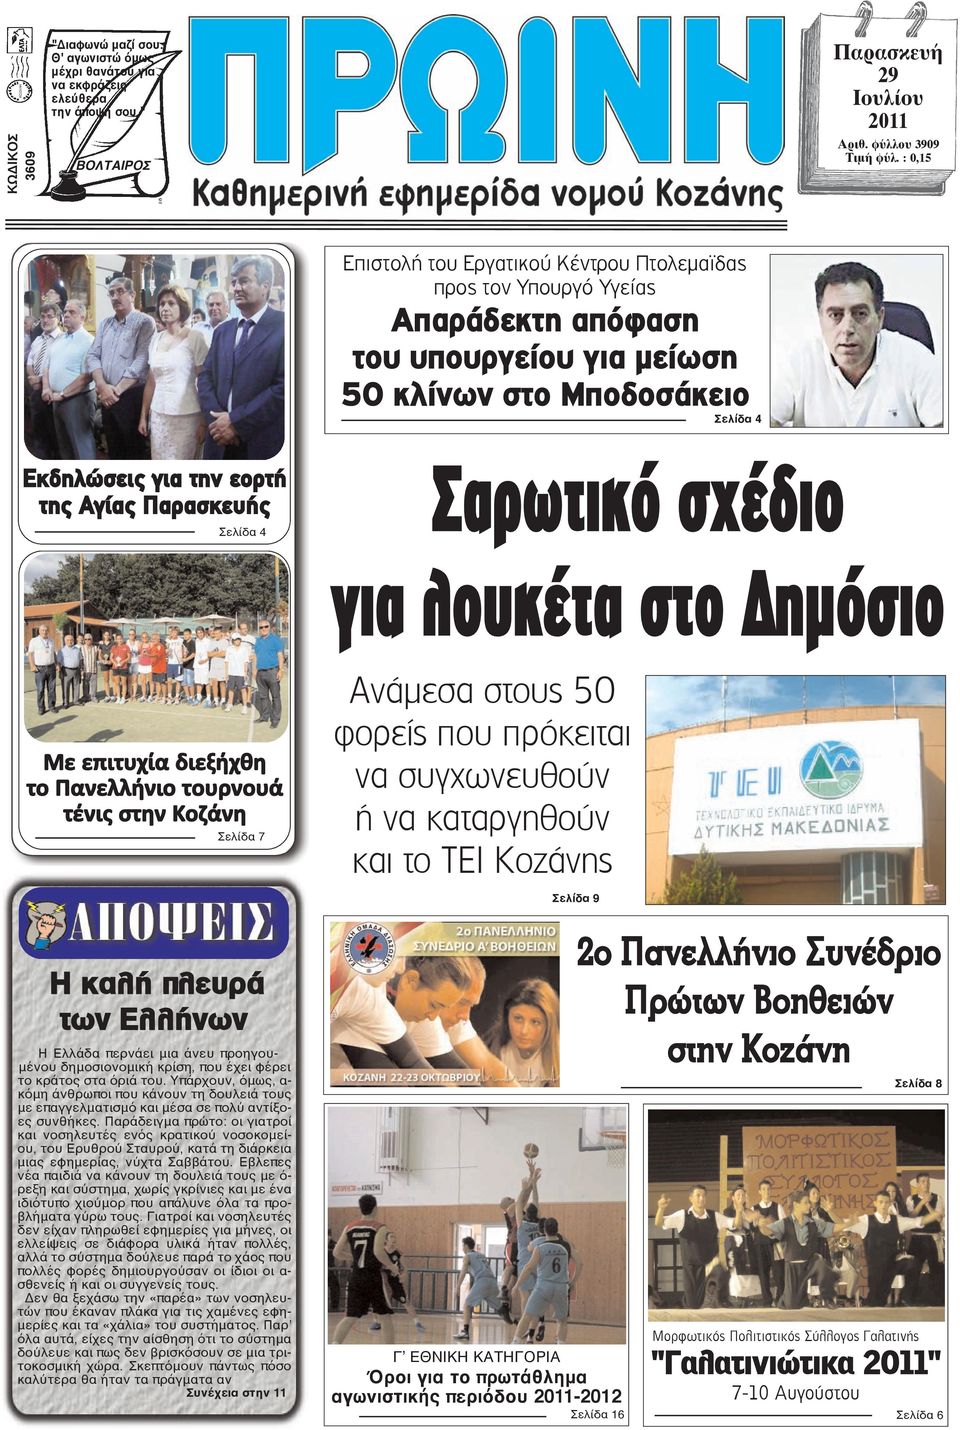 Σελίδα 4 Σαρωτικό σχέδιο για λουκέτα στο ηµόσιο Με επιτυχία διεξήχθη το Πανελλήνιο τουρνουά τένις στην Κοζάνη Σελίδα 7 Η καλή πλευρά των Ελλήνων Η Ελλάδα περνάει μια άνευ προηγουμένου δημοσιονομική